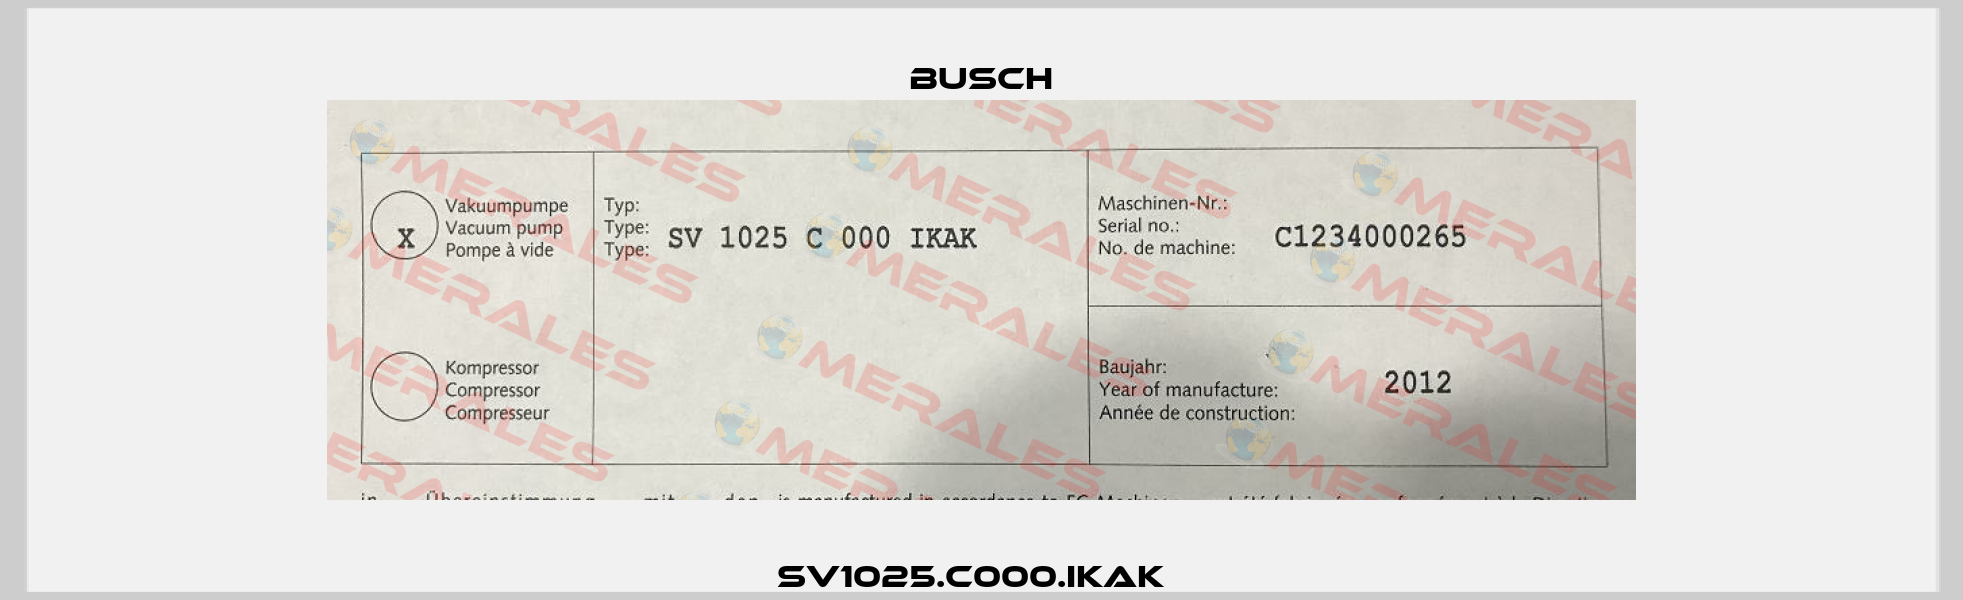 SV1025.C000.IKAK   Busch